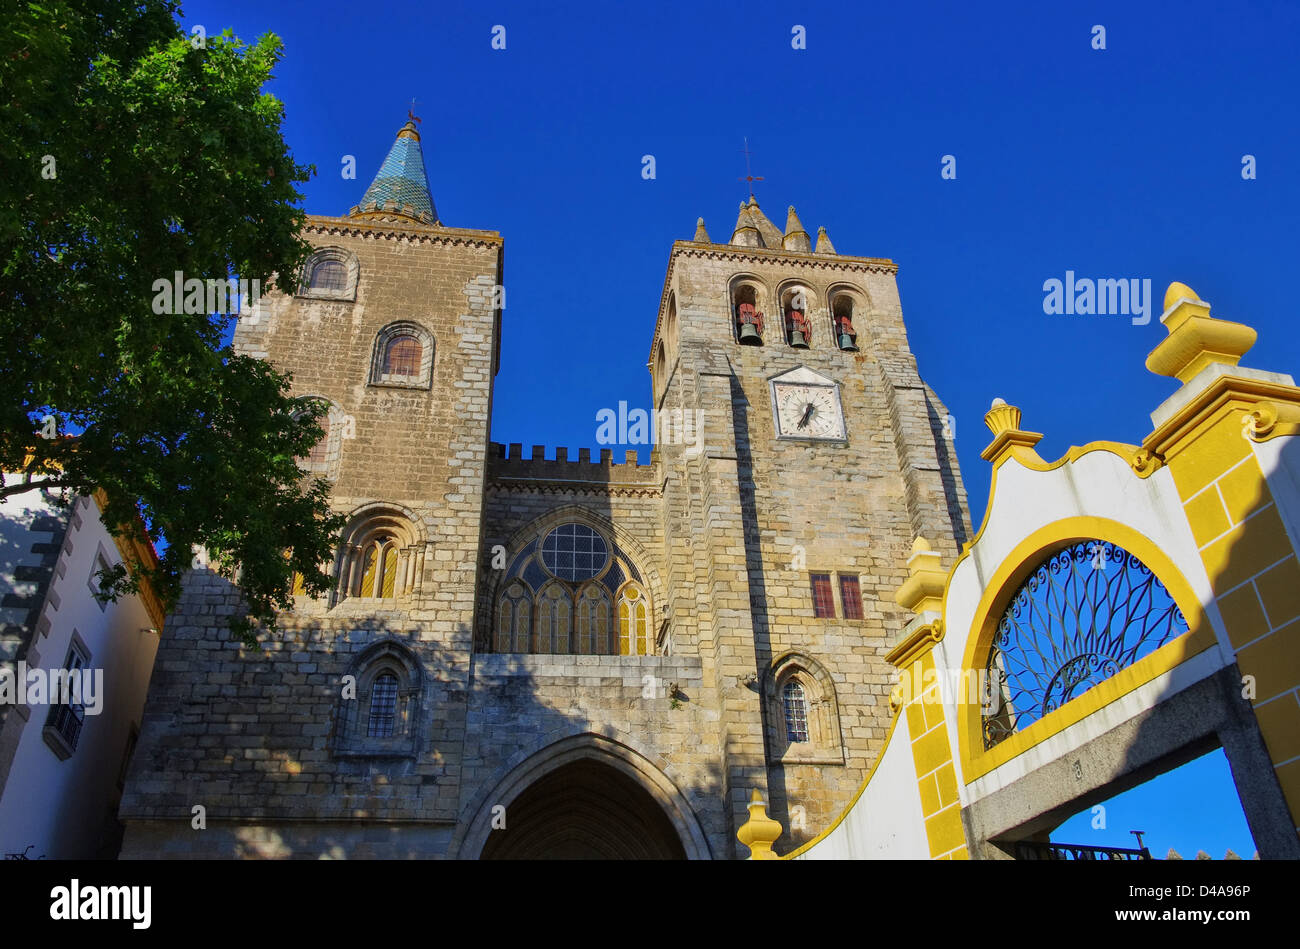 La cathédrale d'Evora Evora Kathedrale - 01 Banque D'Images